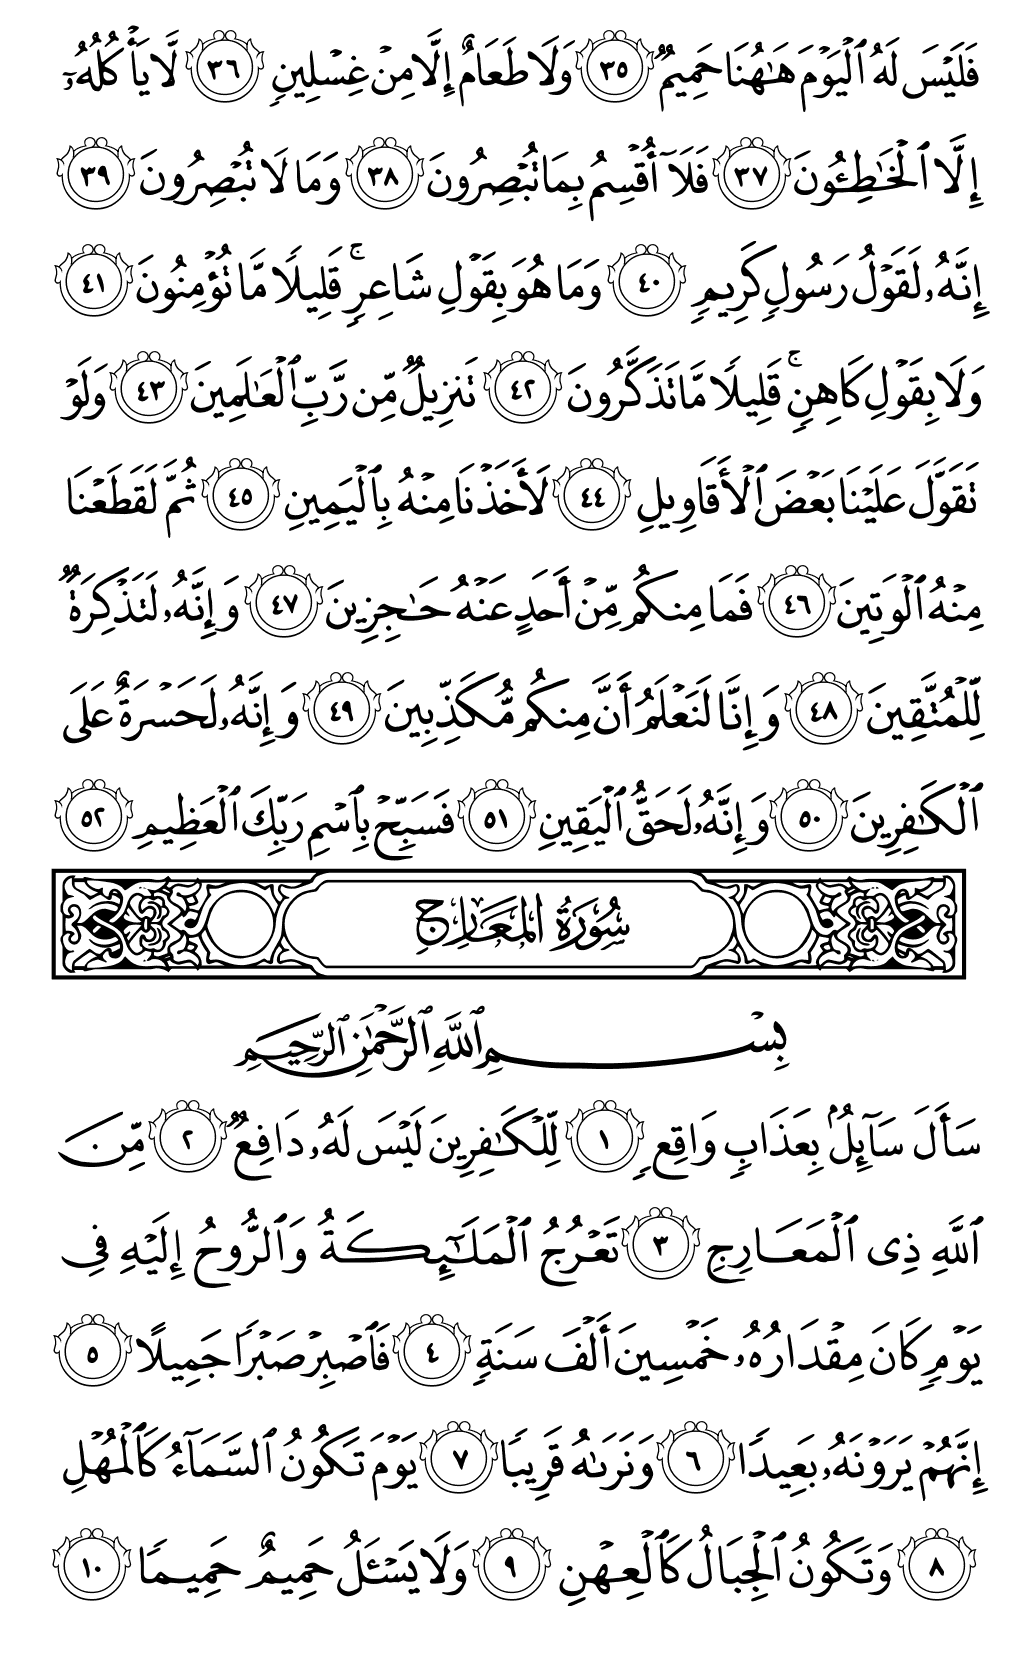 الصفحة رقم 568 من القرآن الكريم